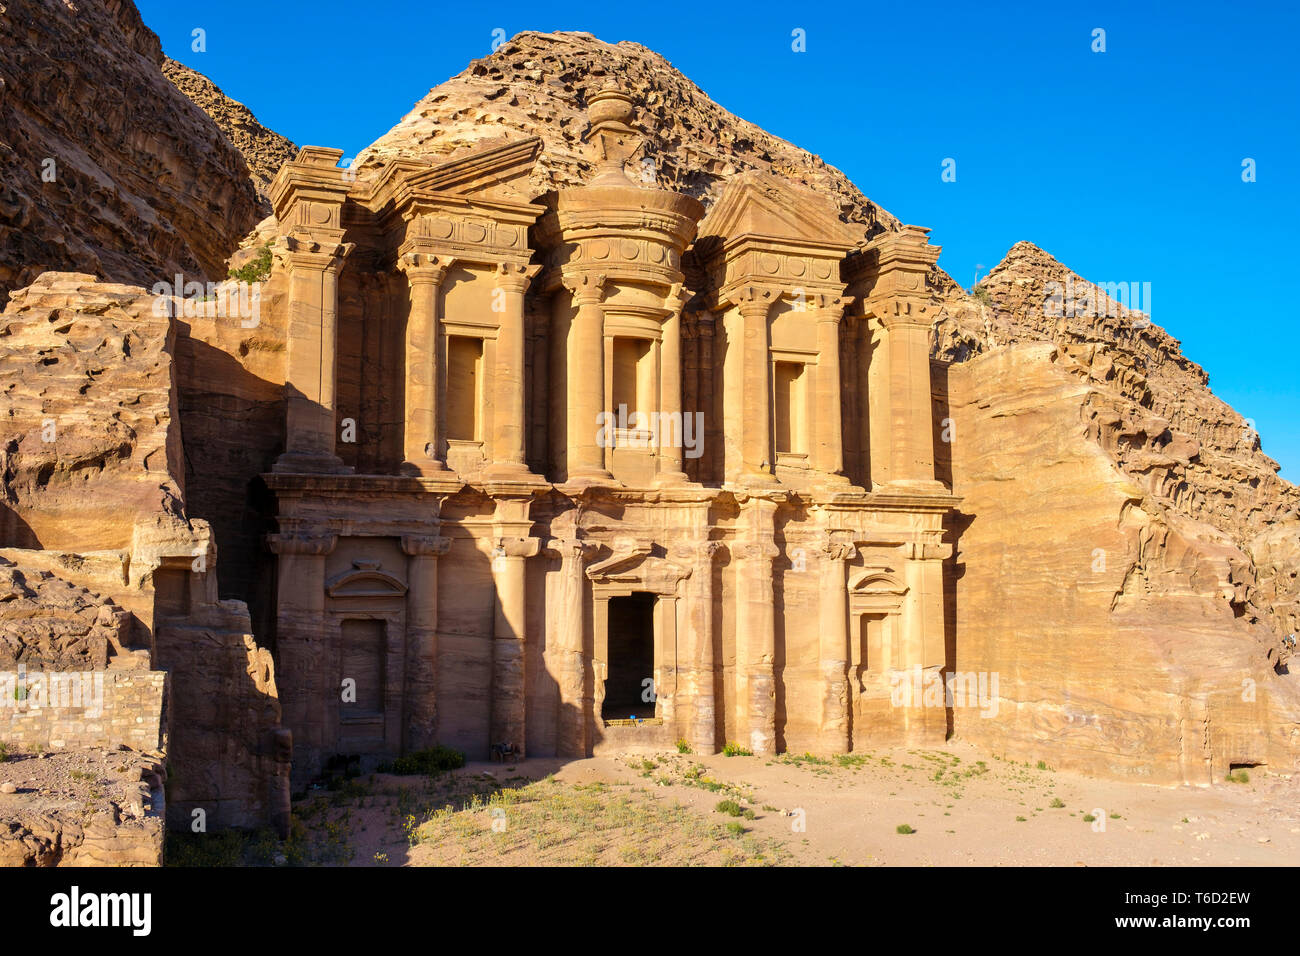 La Jordanie, le Gouvernorat de Ma'an, Petra. UNESCO World Heritage Site. Le monastère Ad-Deir, sculptée dans une falaise de grès. Banque D'Images